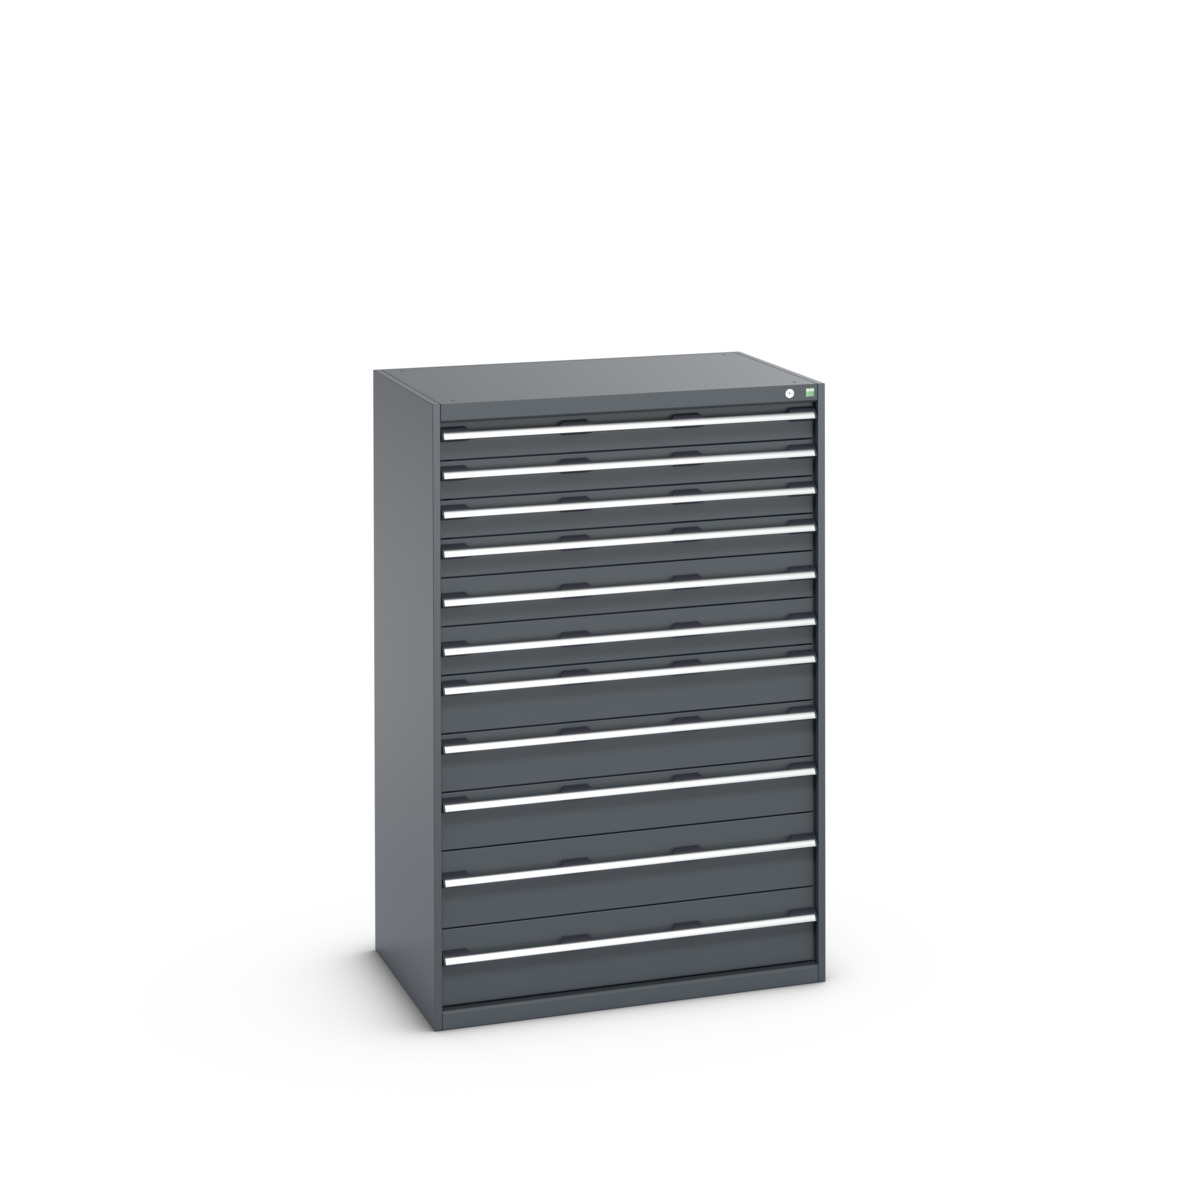 40029038.77V - cubio drawer cabinet